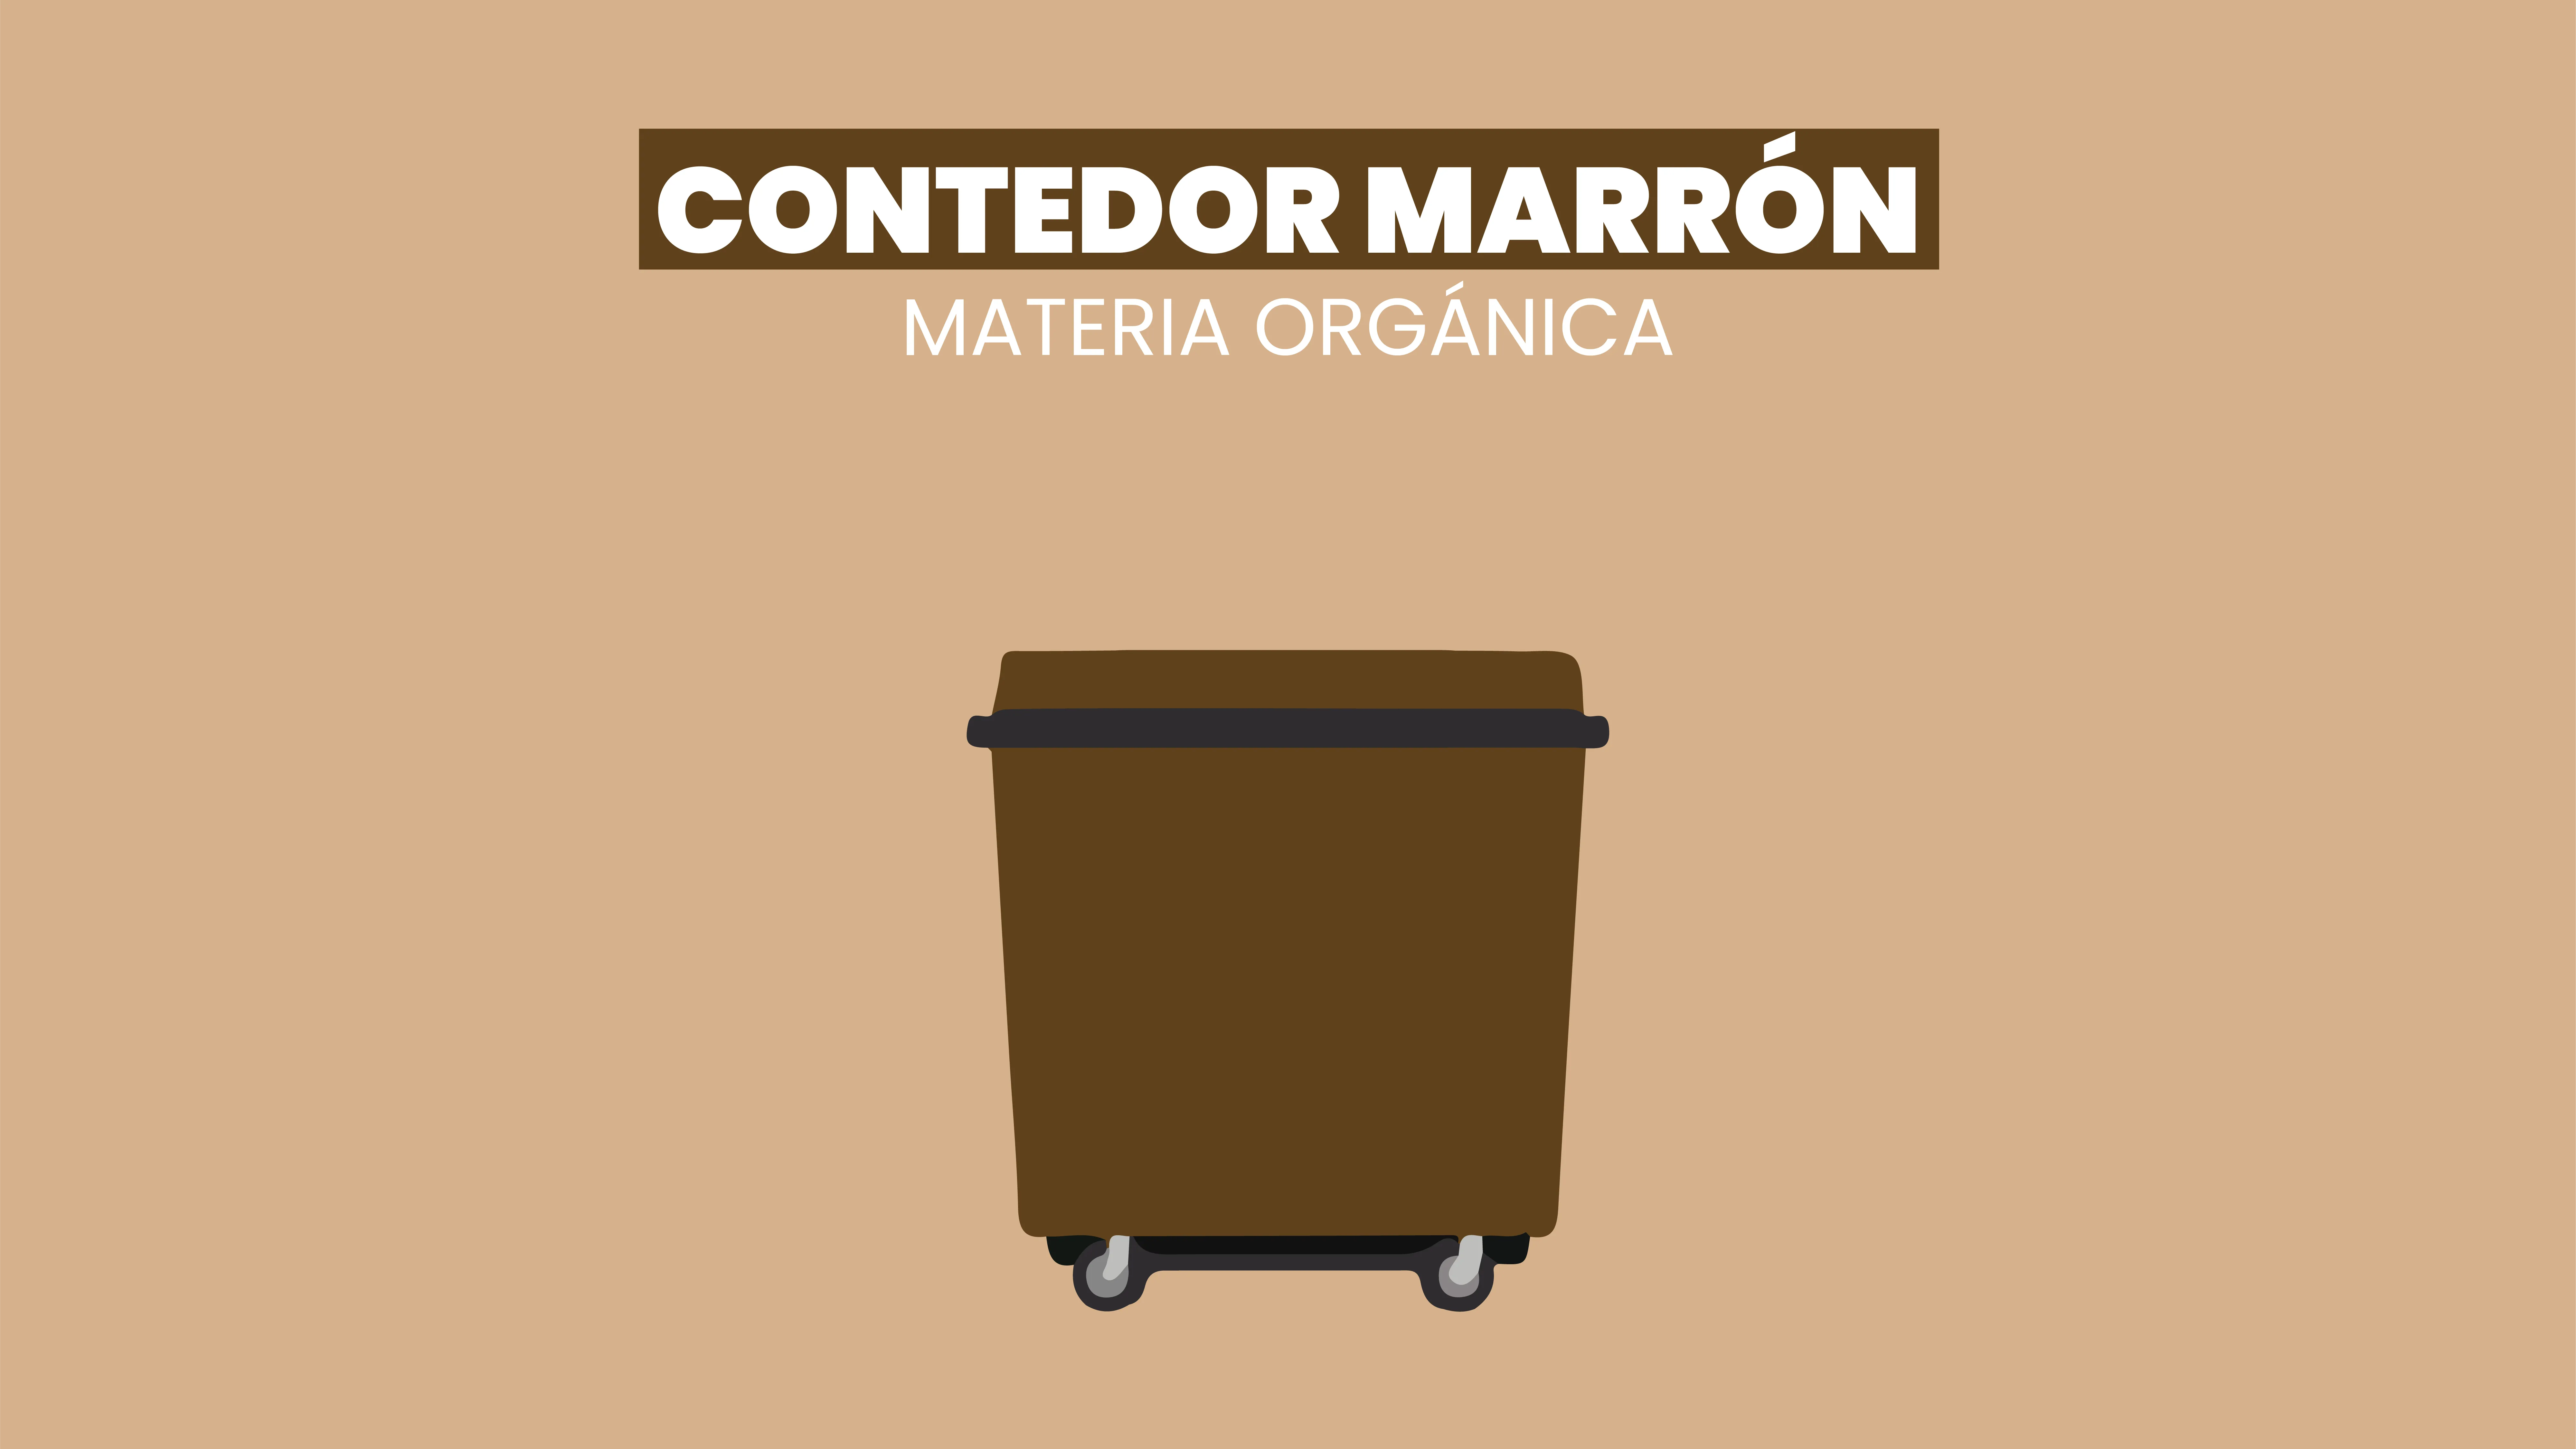 O contedor marrón: A materia orgánica II